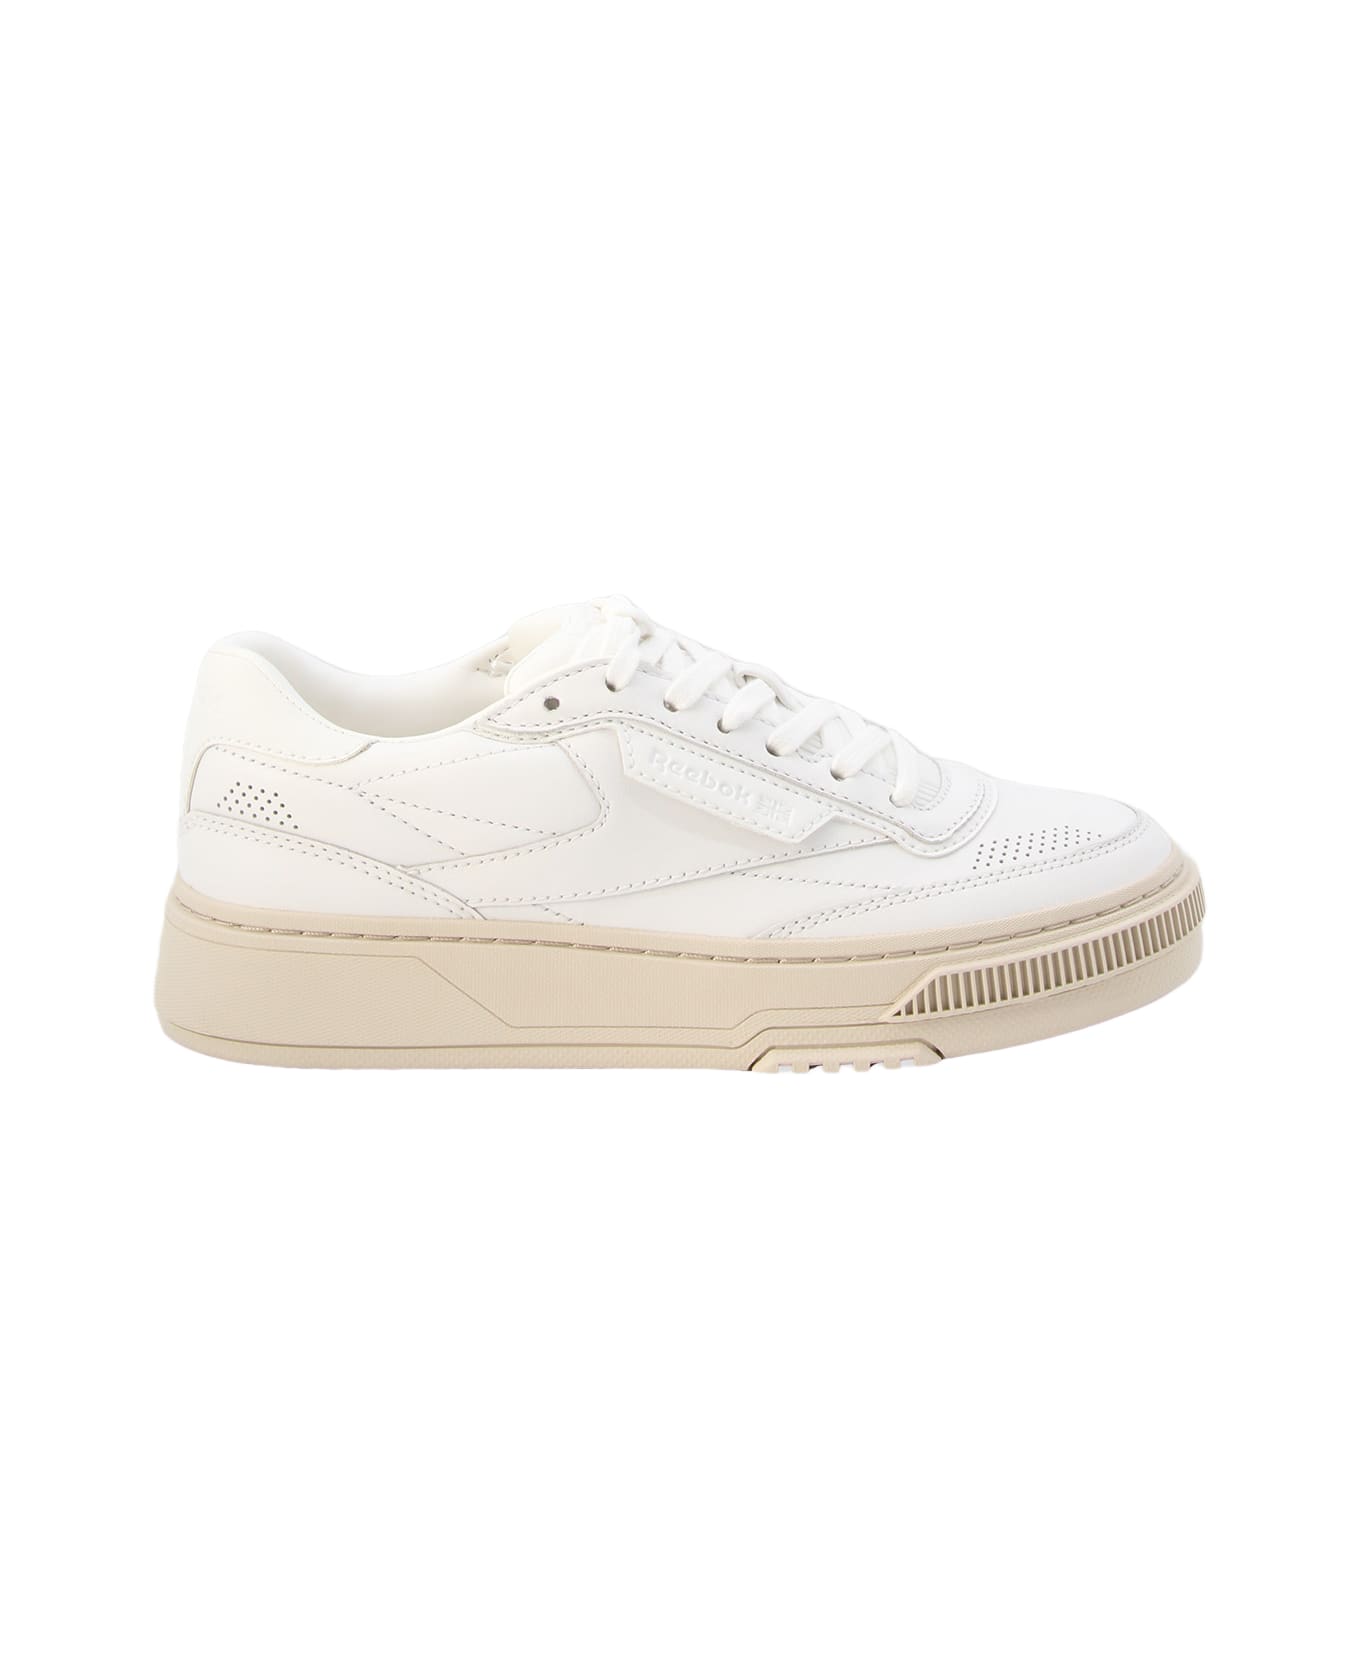 Reebok White Leather C Ltd Sneakers - White